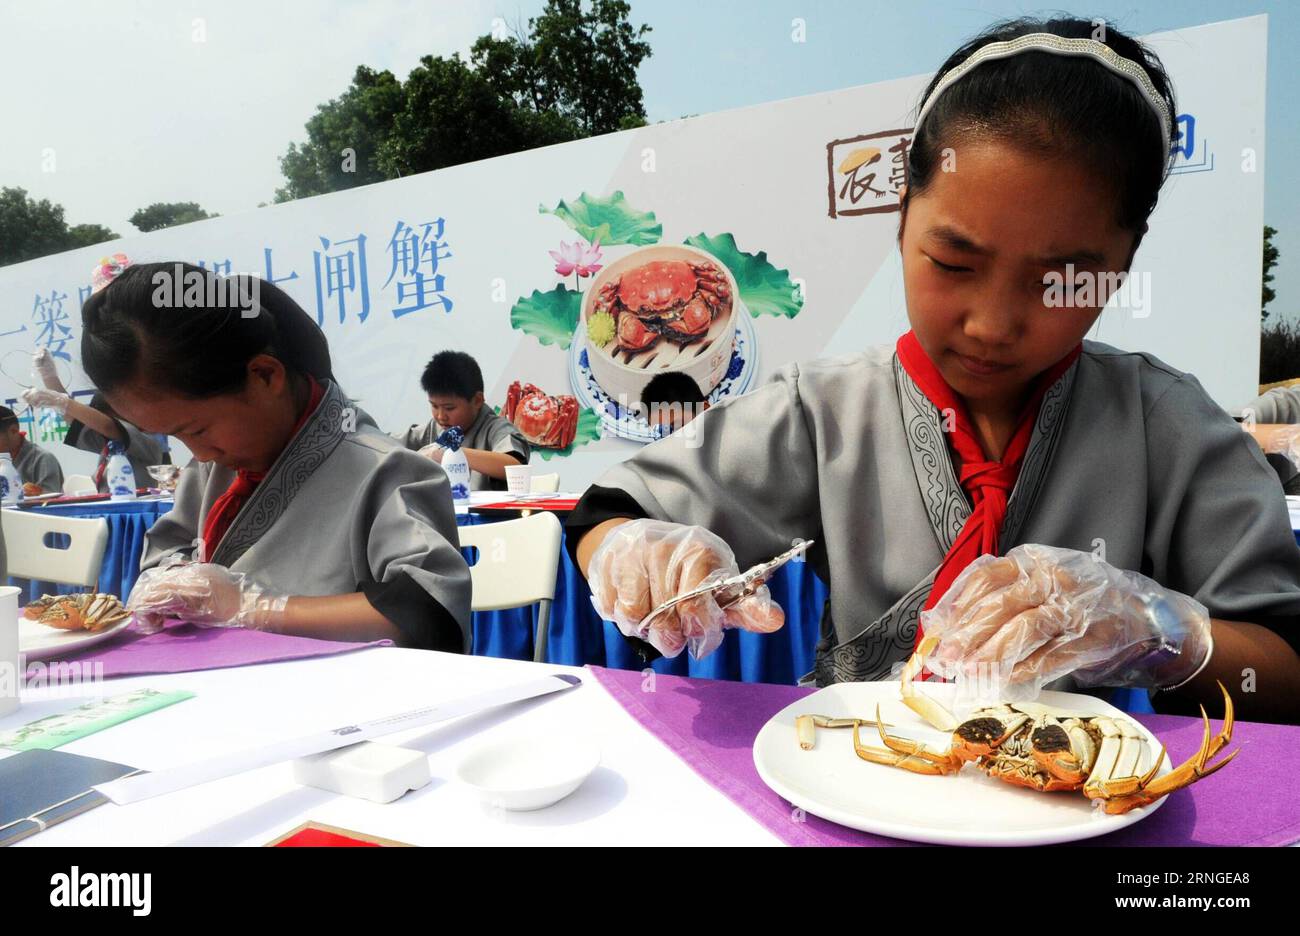 SUZHOU, le 23 septembre 2016 -- les enfants goûtent aux crabes chinois à moufles lors d'un festival de récolte de crabe du lac Yangcheng à Suzhou, dans la province du Jiangsu, dans l'est de la Chine, le 23 septembre 2016. La saison de récolte 2016 pour le crabe moufle chinois (Eriocheir sinensis) dans le lac Yangcheng, une importante région productrice, a débuté vendredi. Aussi connu sous le nom de grand crabe d'écluse, les crabes chinois à moufles sont appréciés par de nombreux amateurs de gourmets. (wx) CHINA-JIANGSU-YANGCHENG LAKE-CHINESE MOUFLES CRABE-MOISSON (CN) JixChunpeng PUBLICATIONxNOTxINxCHN Suzhou sept 23 2016 enfants bouton crabes moyens chinois pendant un festival de récolte de crabe de T Banque D'Images